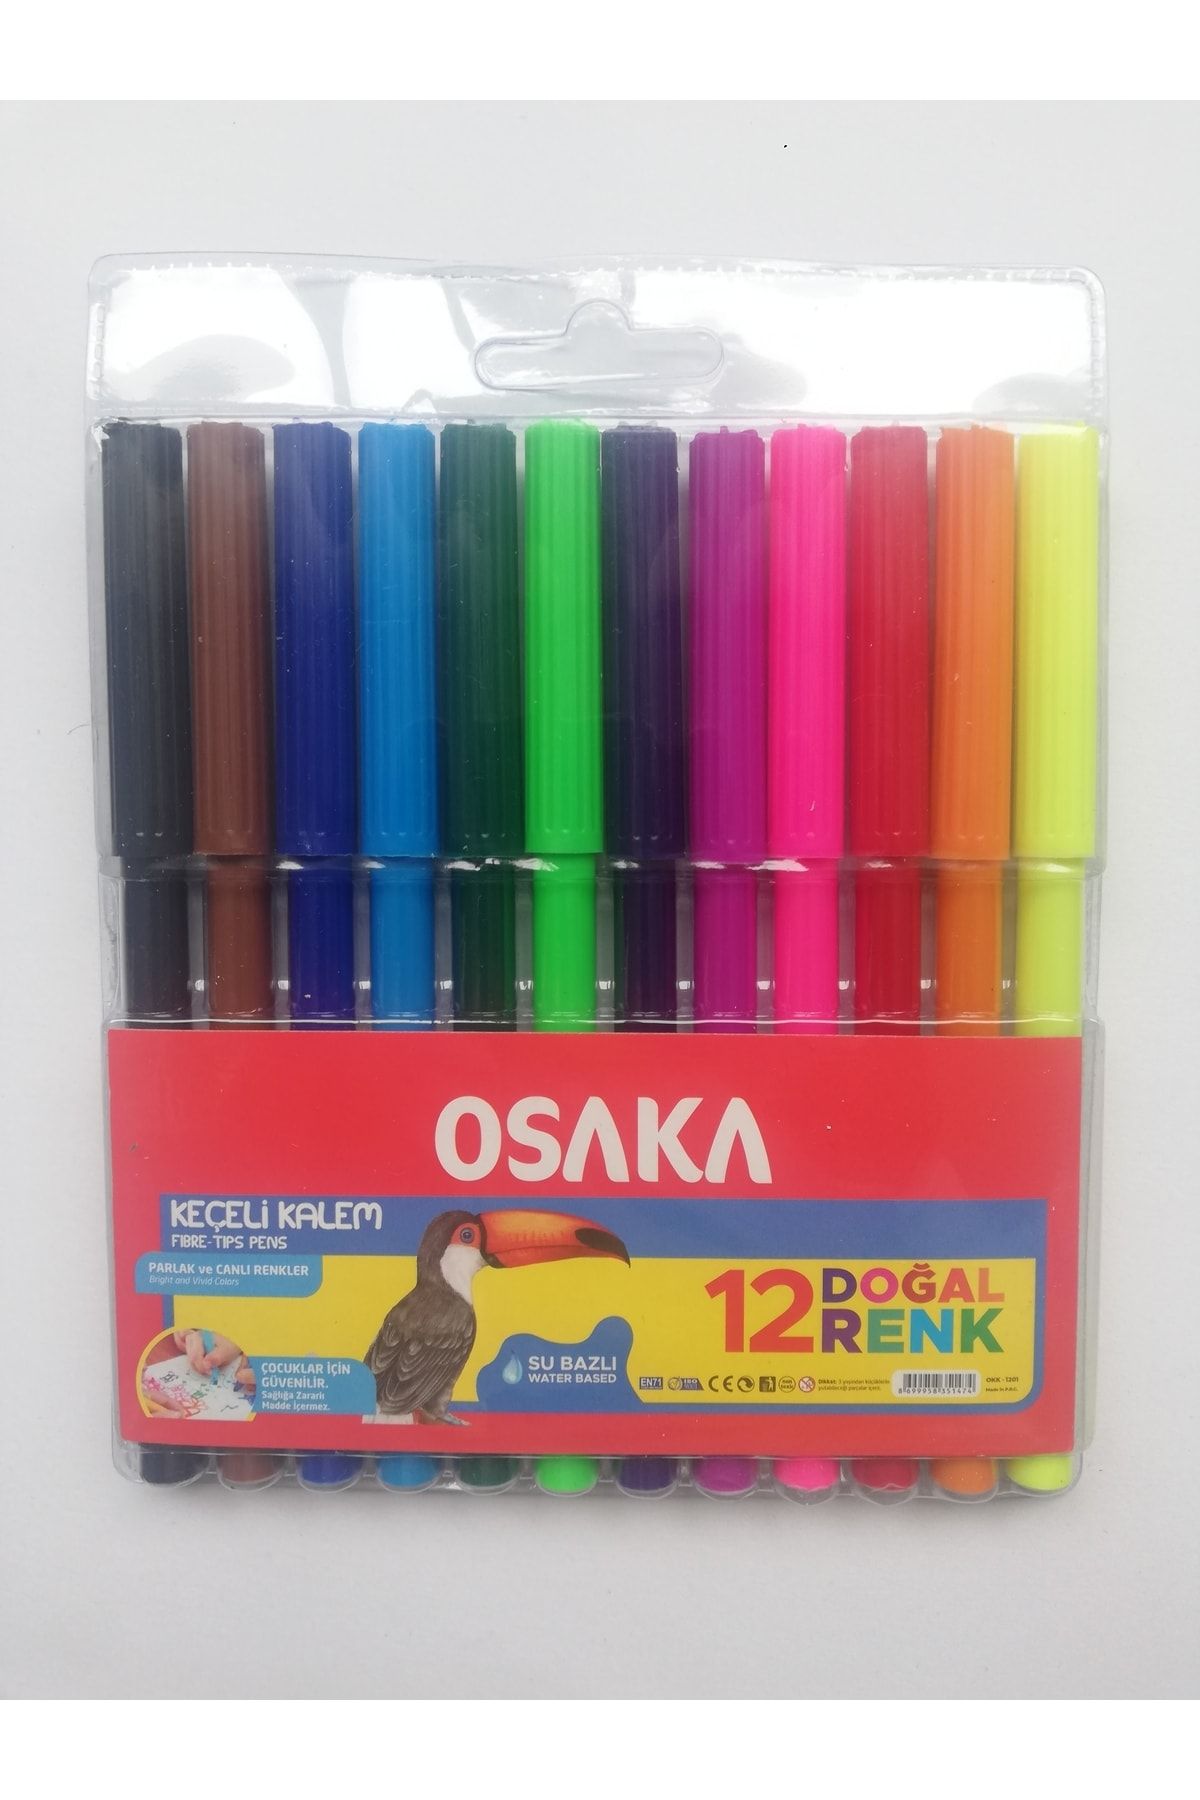 Osaka 12 Doğal Renk Su Bazlı Keçeli Kalem